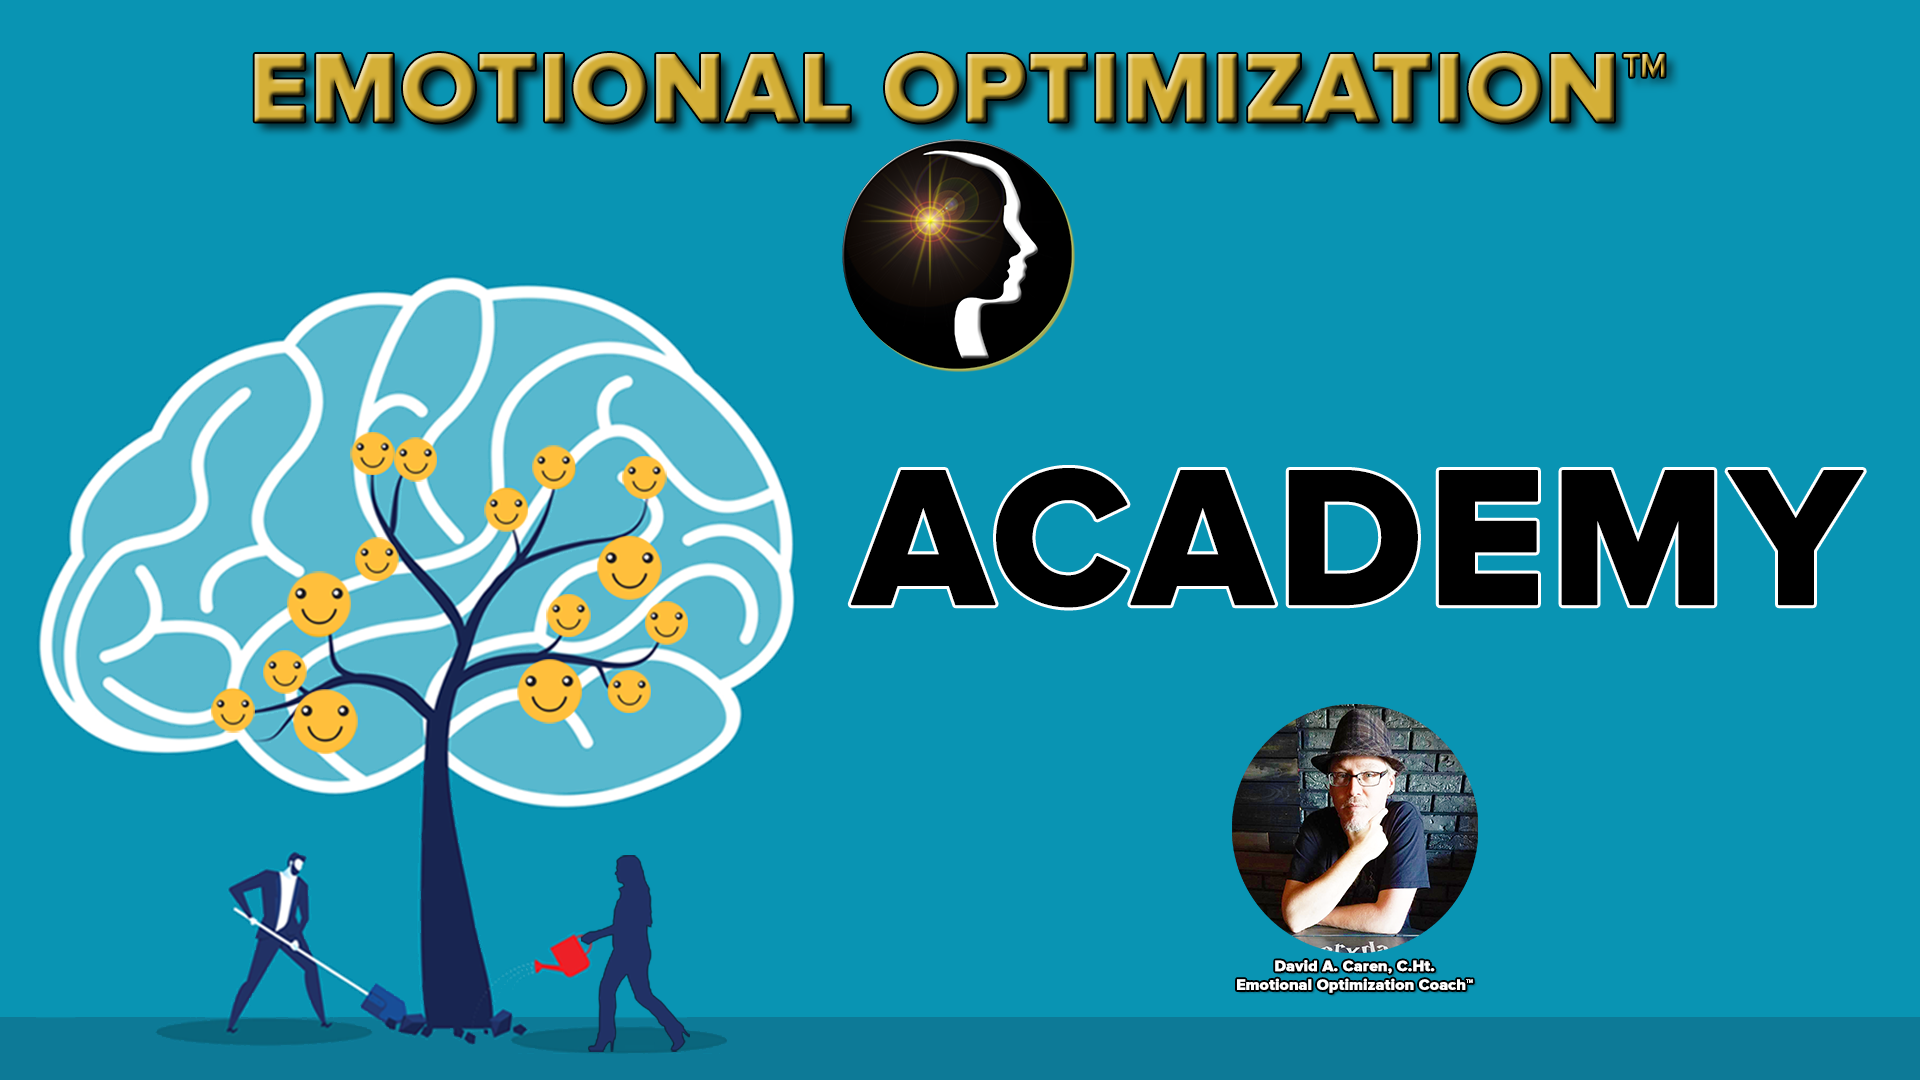 Emotional Optimization Academy